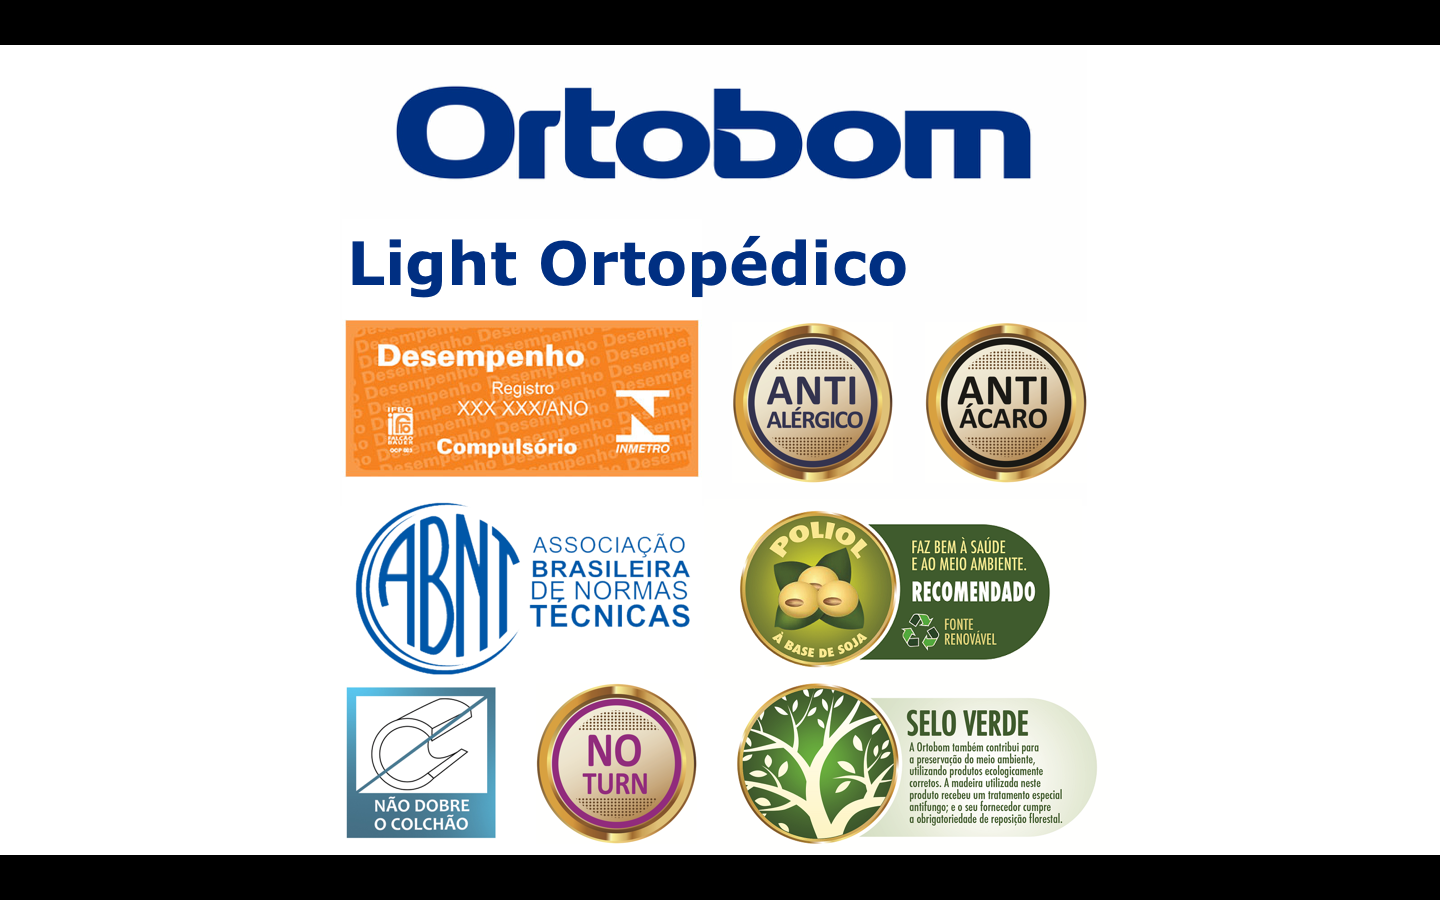 Colchão Solteiro Ortobom Light Ortopédico (88x188x24) -  - 4